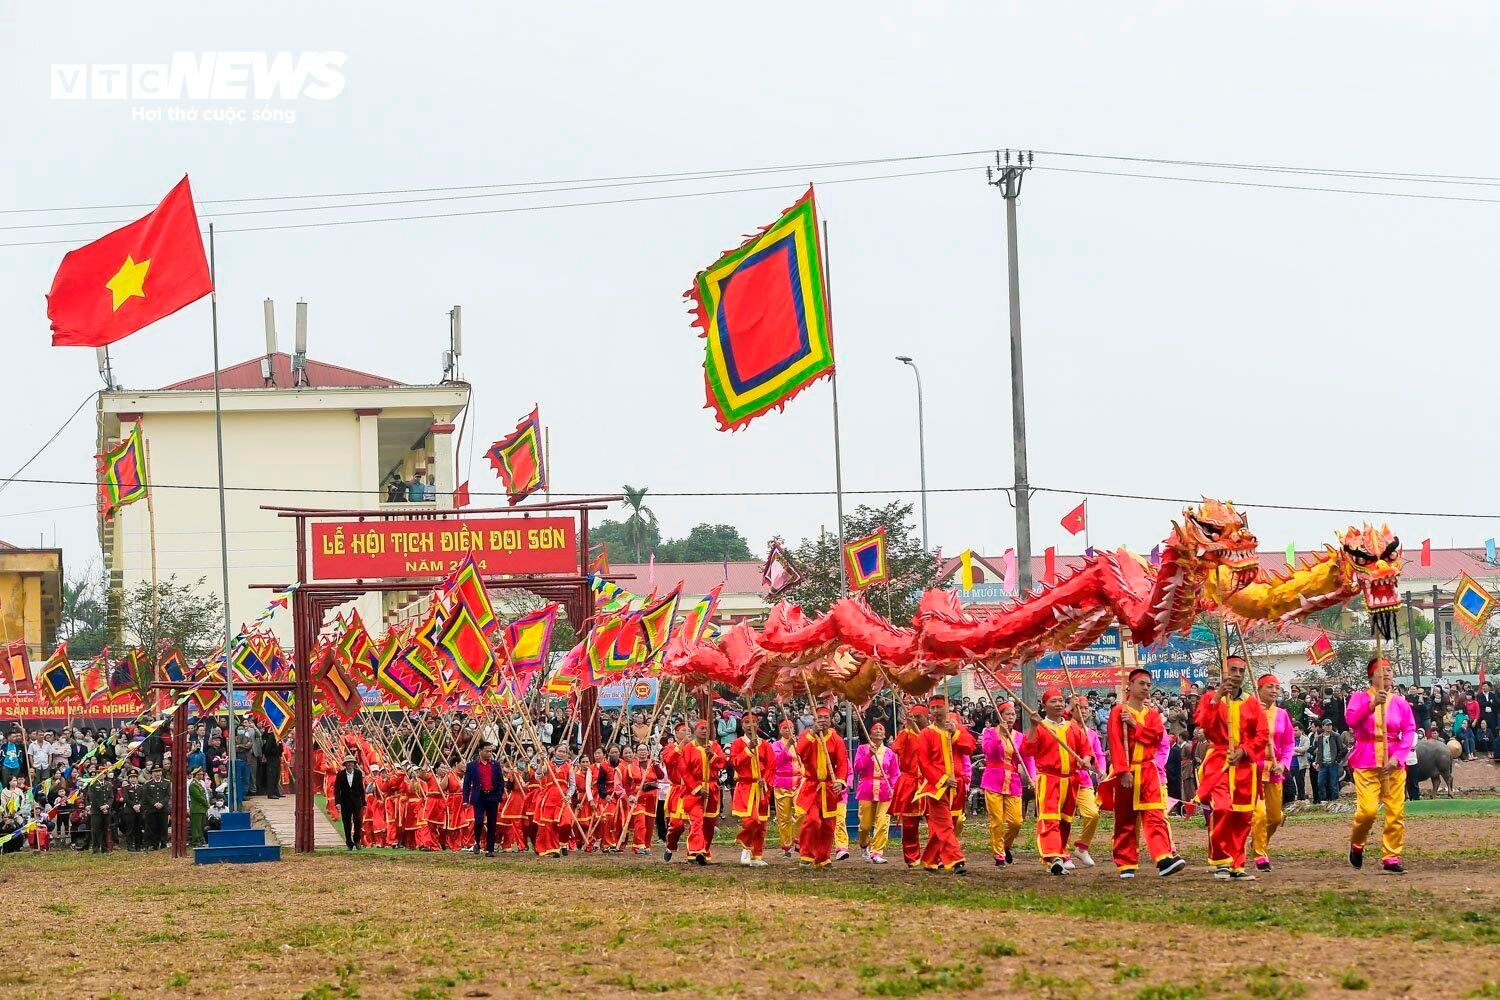 Lão nông đóng giả vua, mặc long bào đi cày trong lễ hội Tịch điền ở Hà Nam- Ảnh 1.